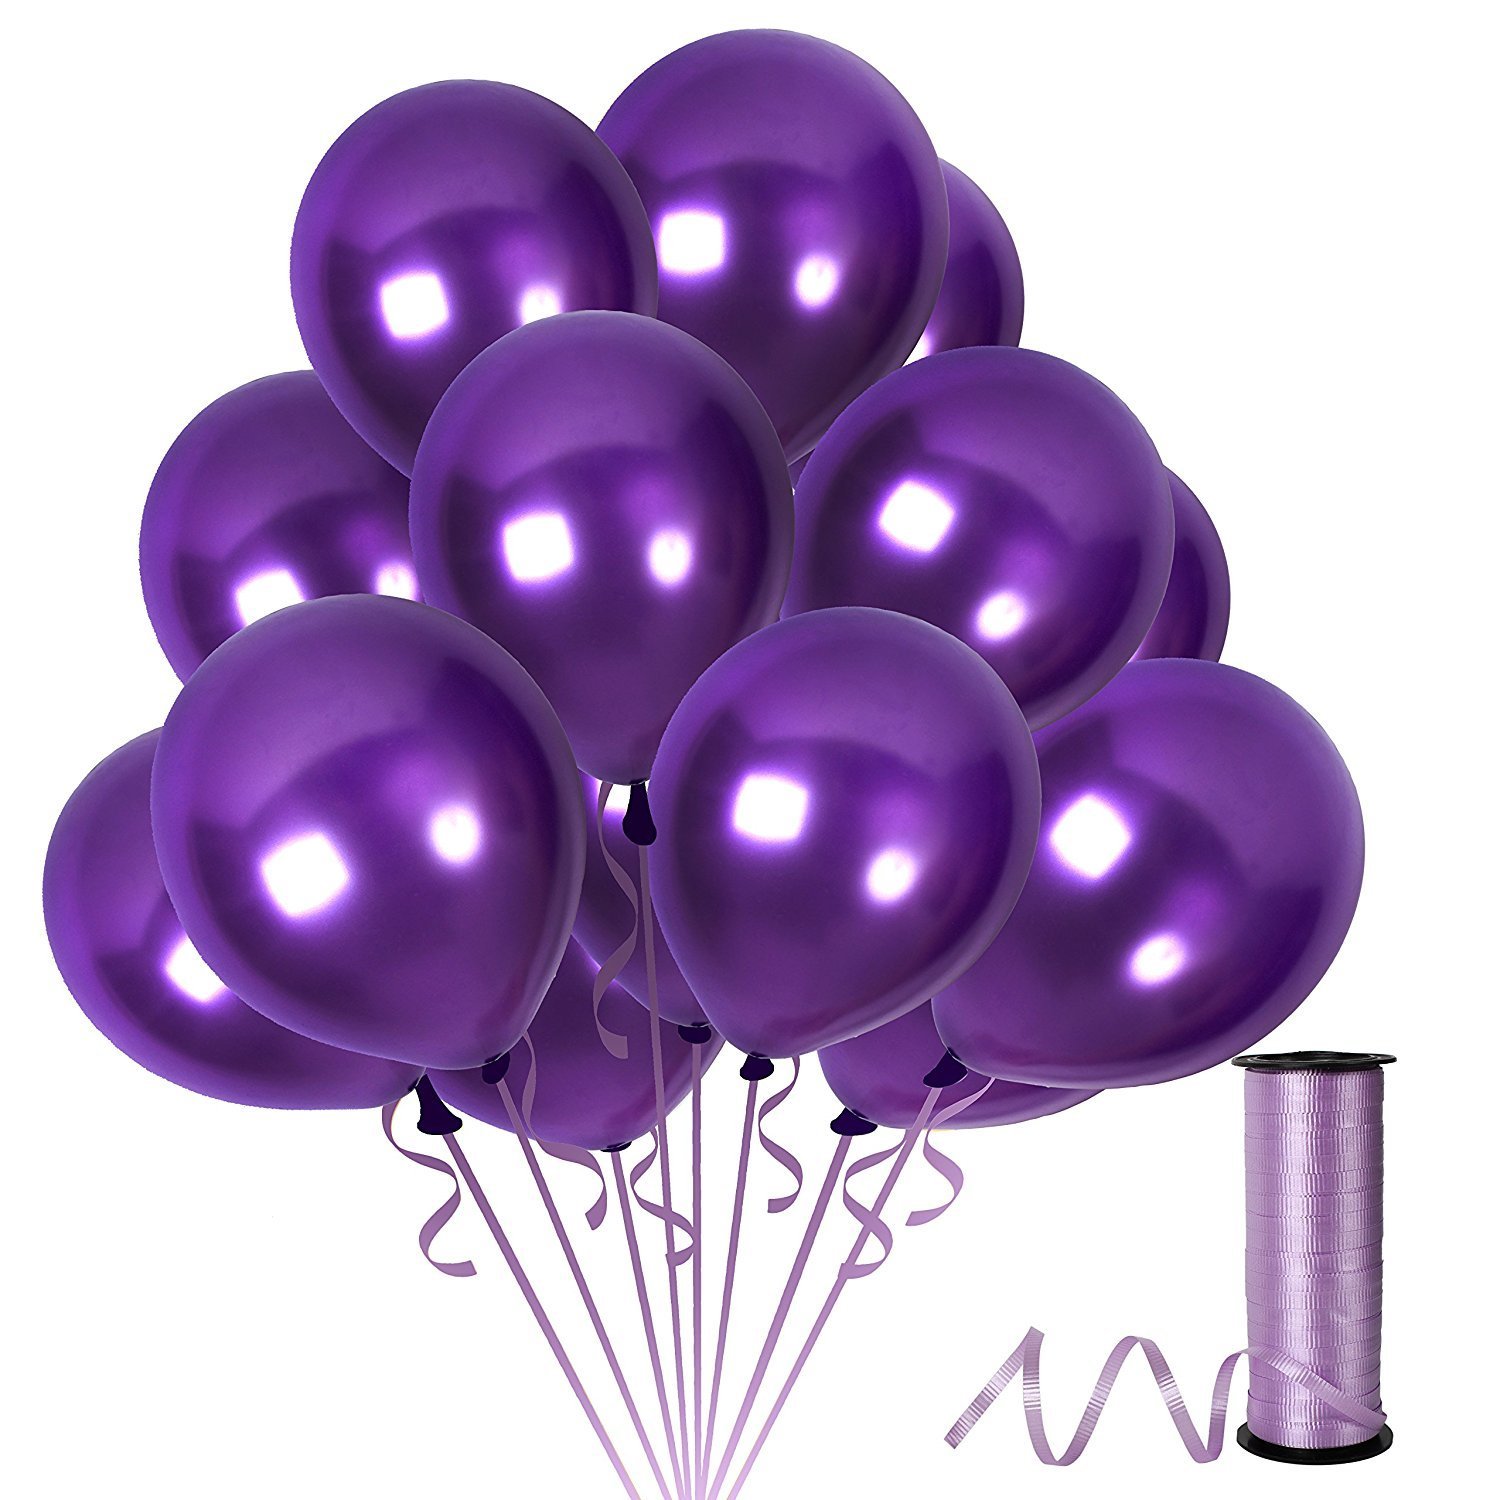 Шар фиолетового цвета. Сиреневые шары. Фиолетовые шары. Фиолетовый шарик. Фиолетовые воздушные шары.